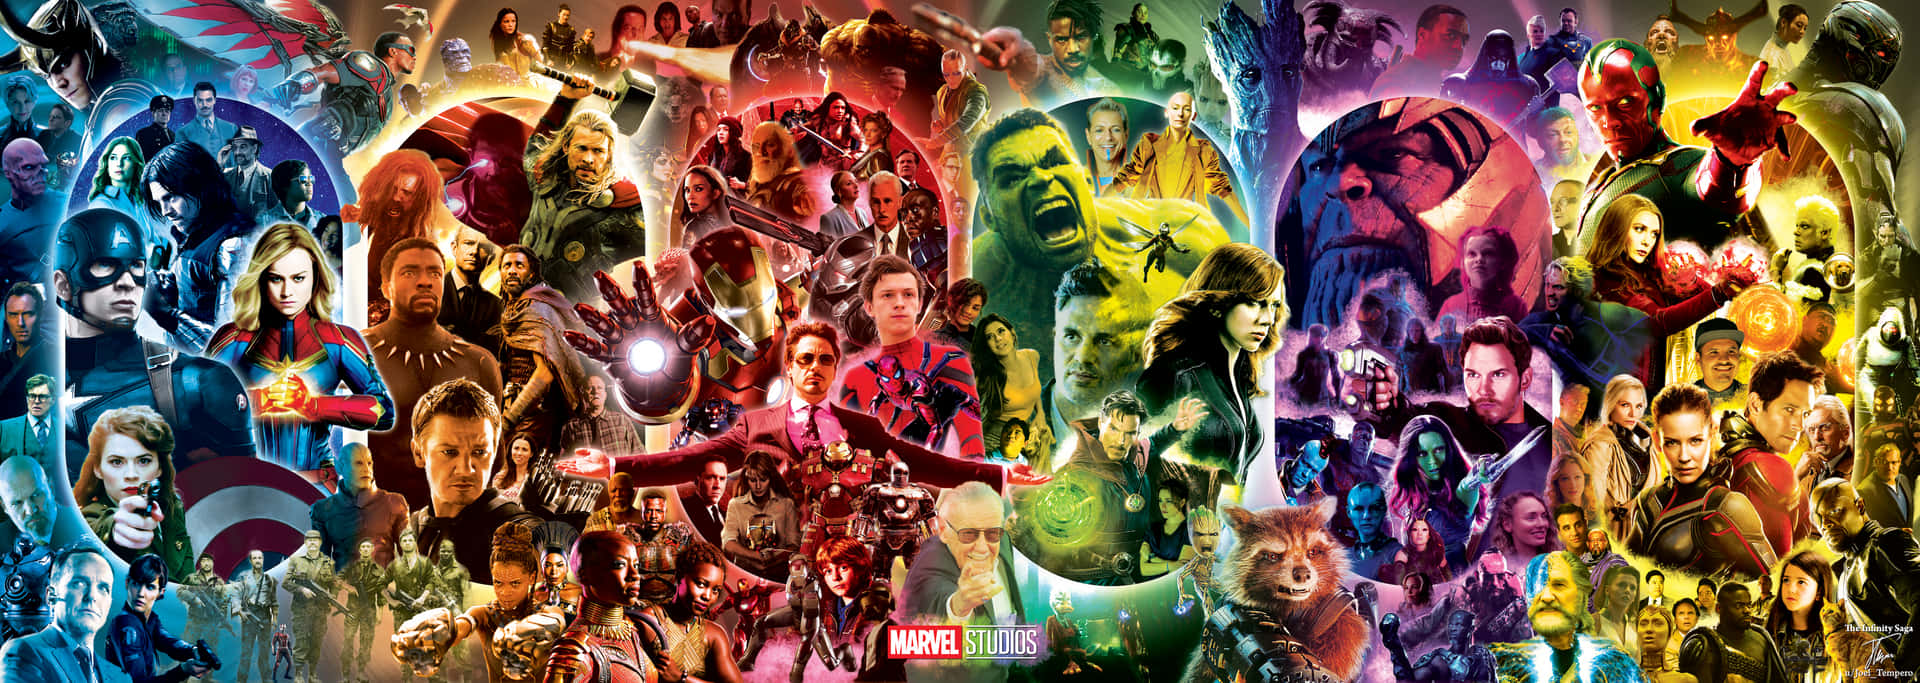 De utrolige Avengers forener sig. Wallpaper